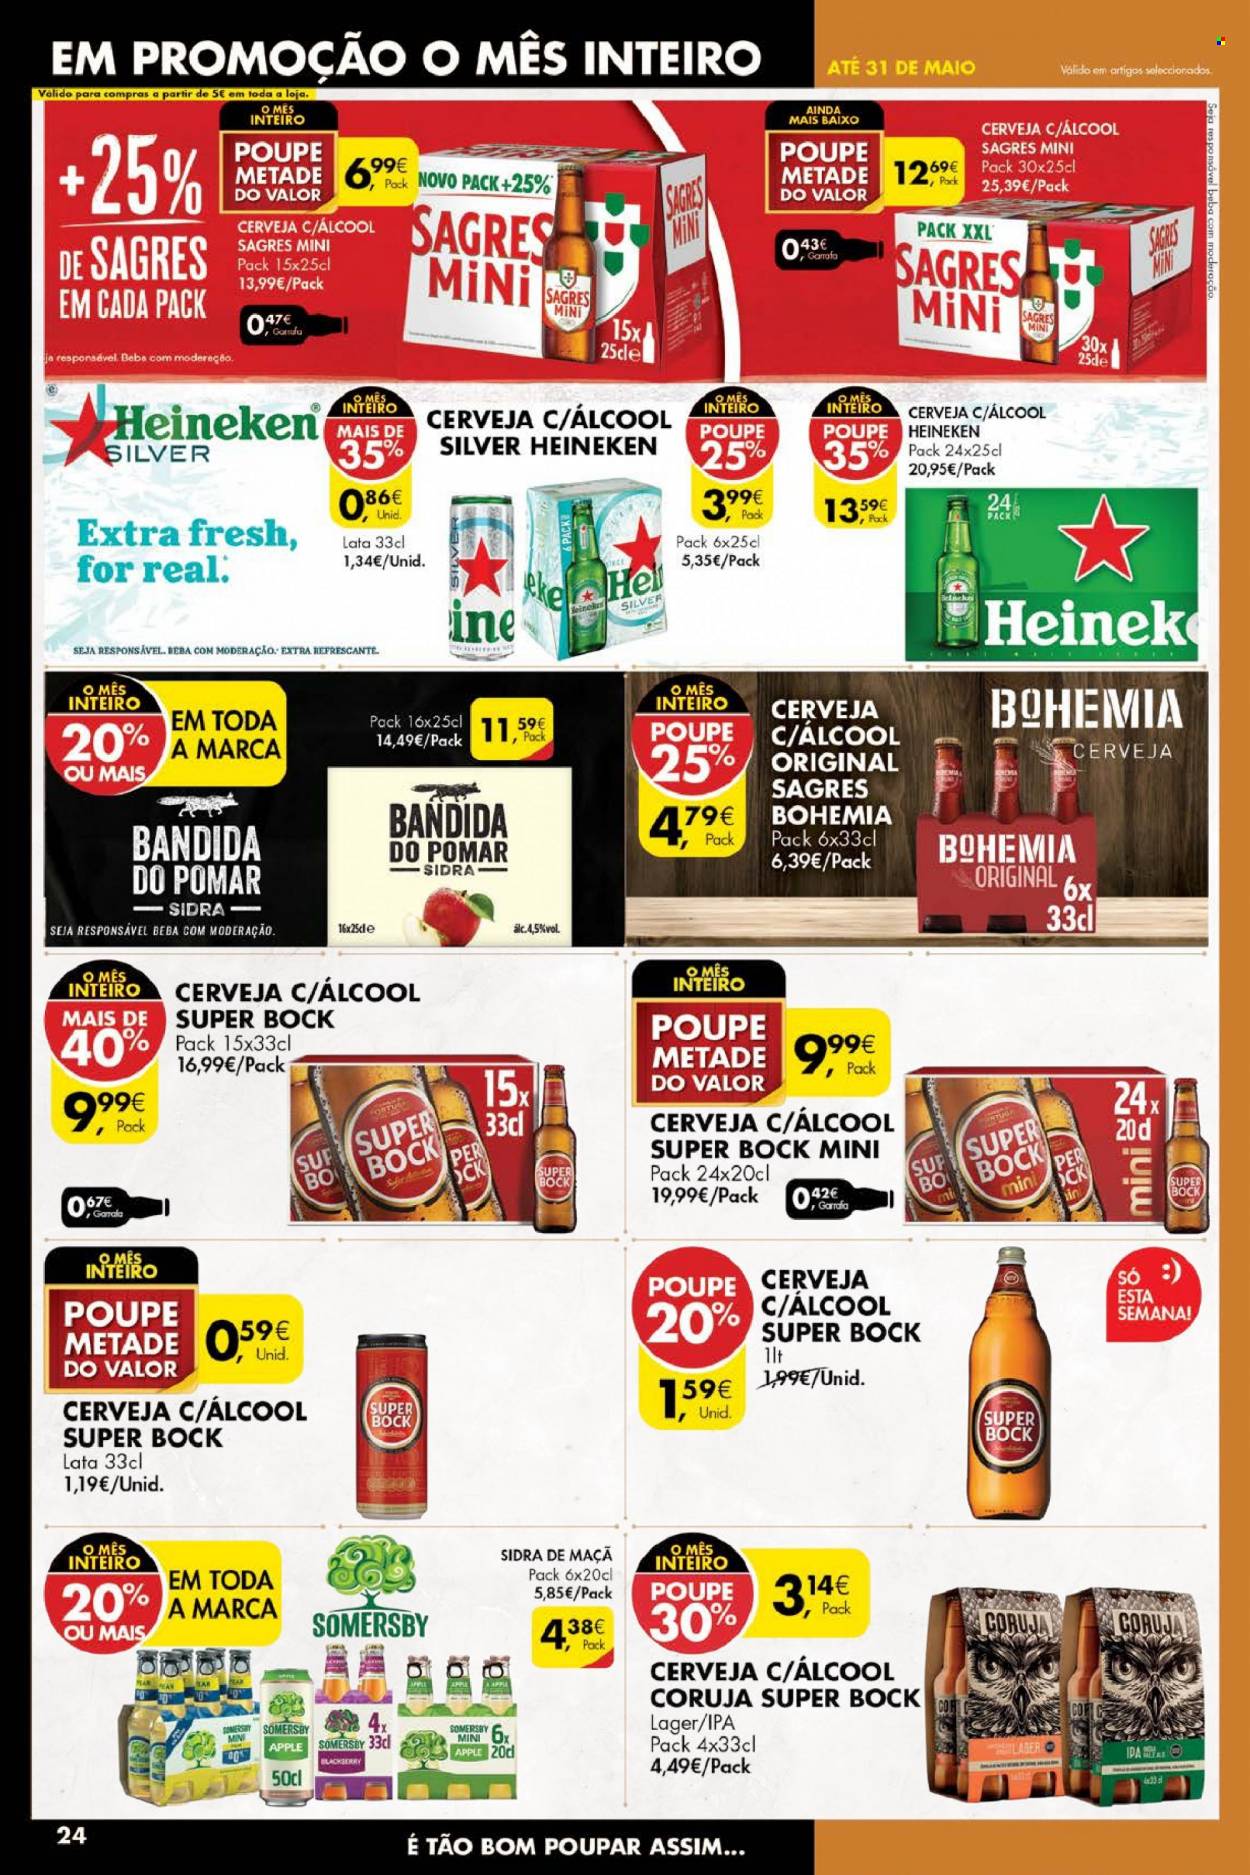 thumbnail - Folheto Pingo Doce - 24.5.2022 - 30.5.2022 - Produtos em promoção - Heineken, Sagres, Super Bock, cerveja, Somersby, sidra. Página 24.